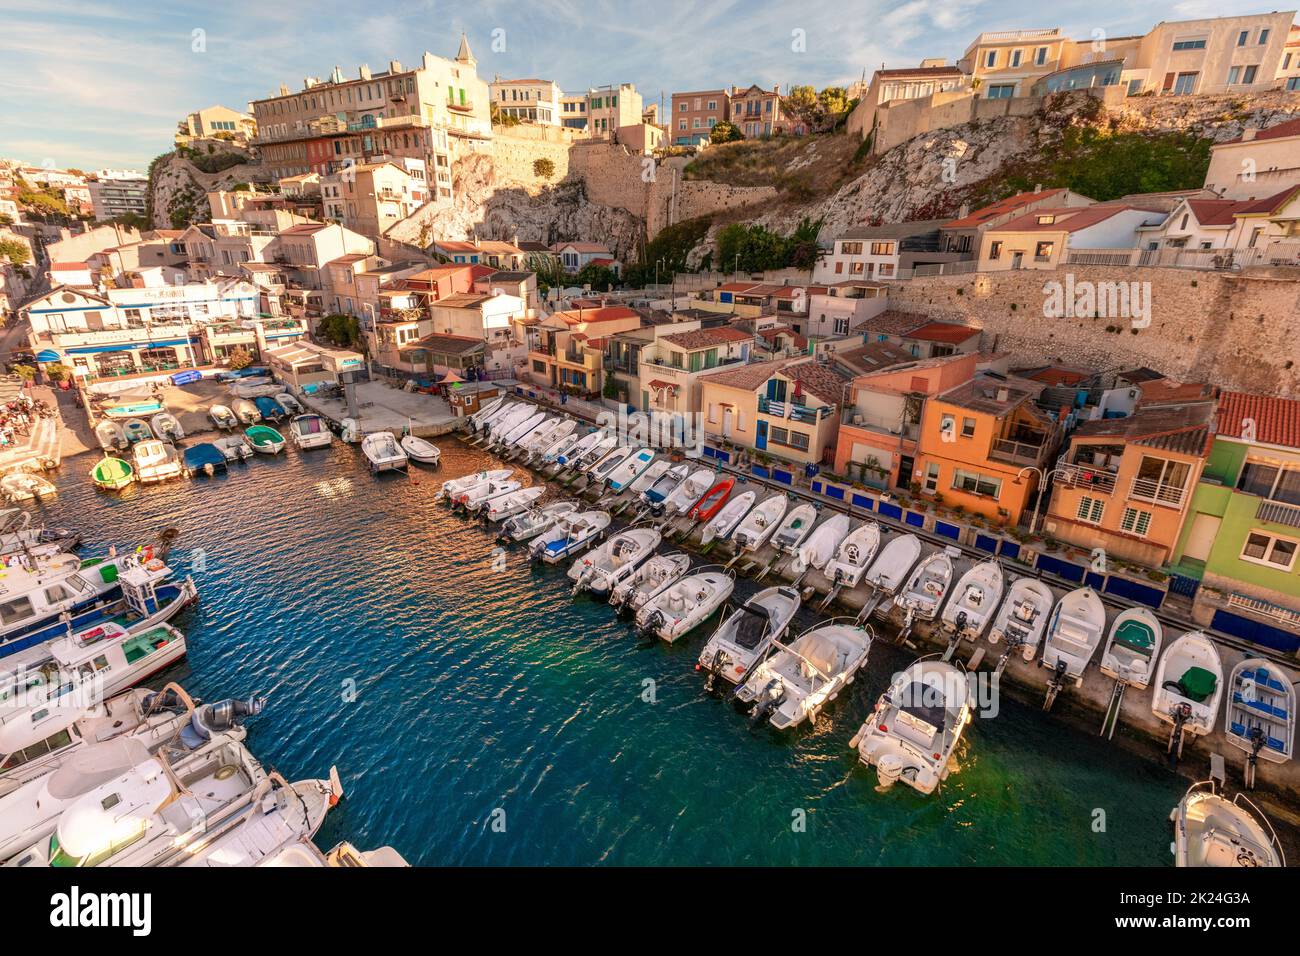 Marsiglia, Francia - 29 settembre 2021: Tradizionale porto di pescatori Vallon des Auffes con case e barche pittoresche. Foto Stock